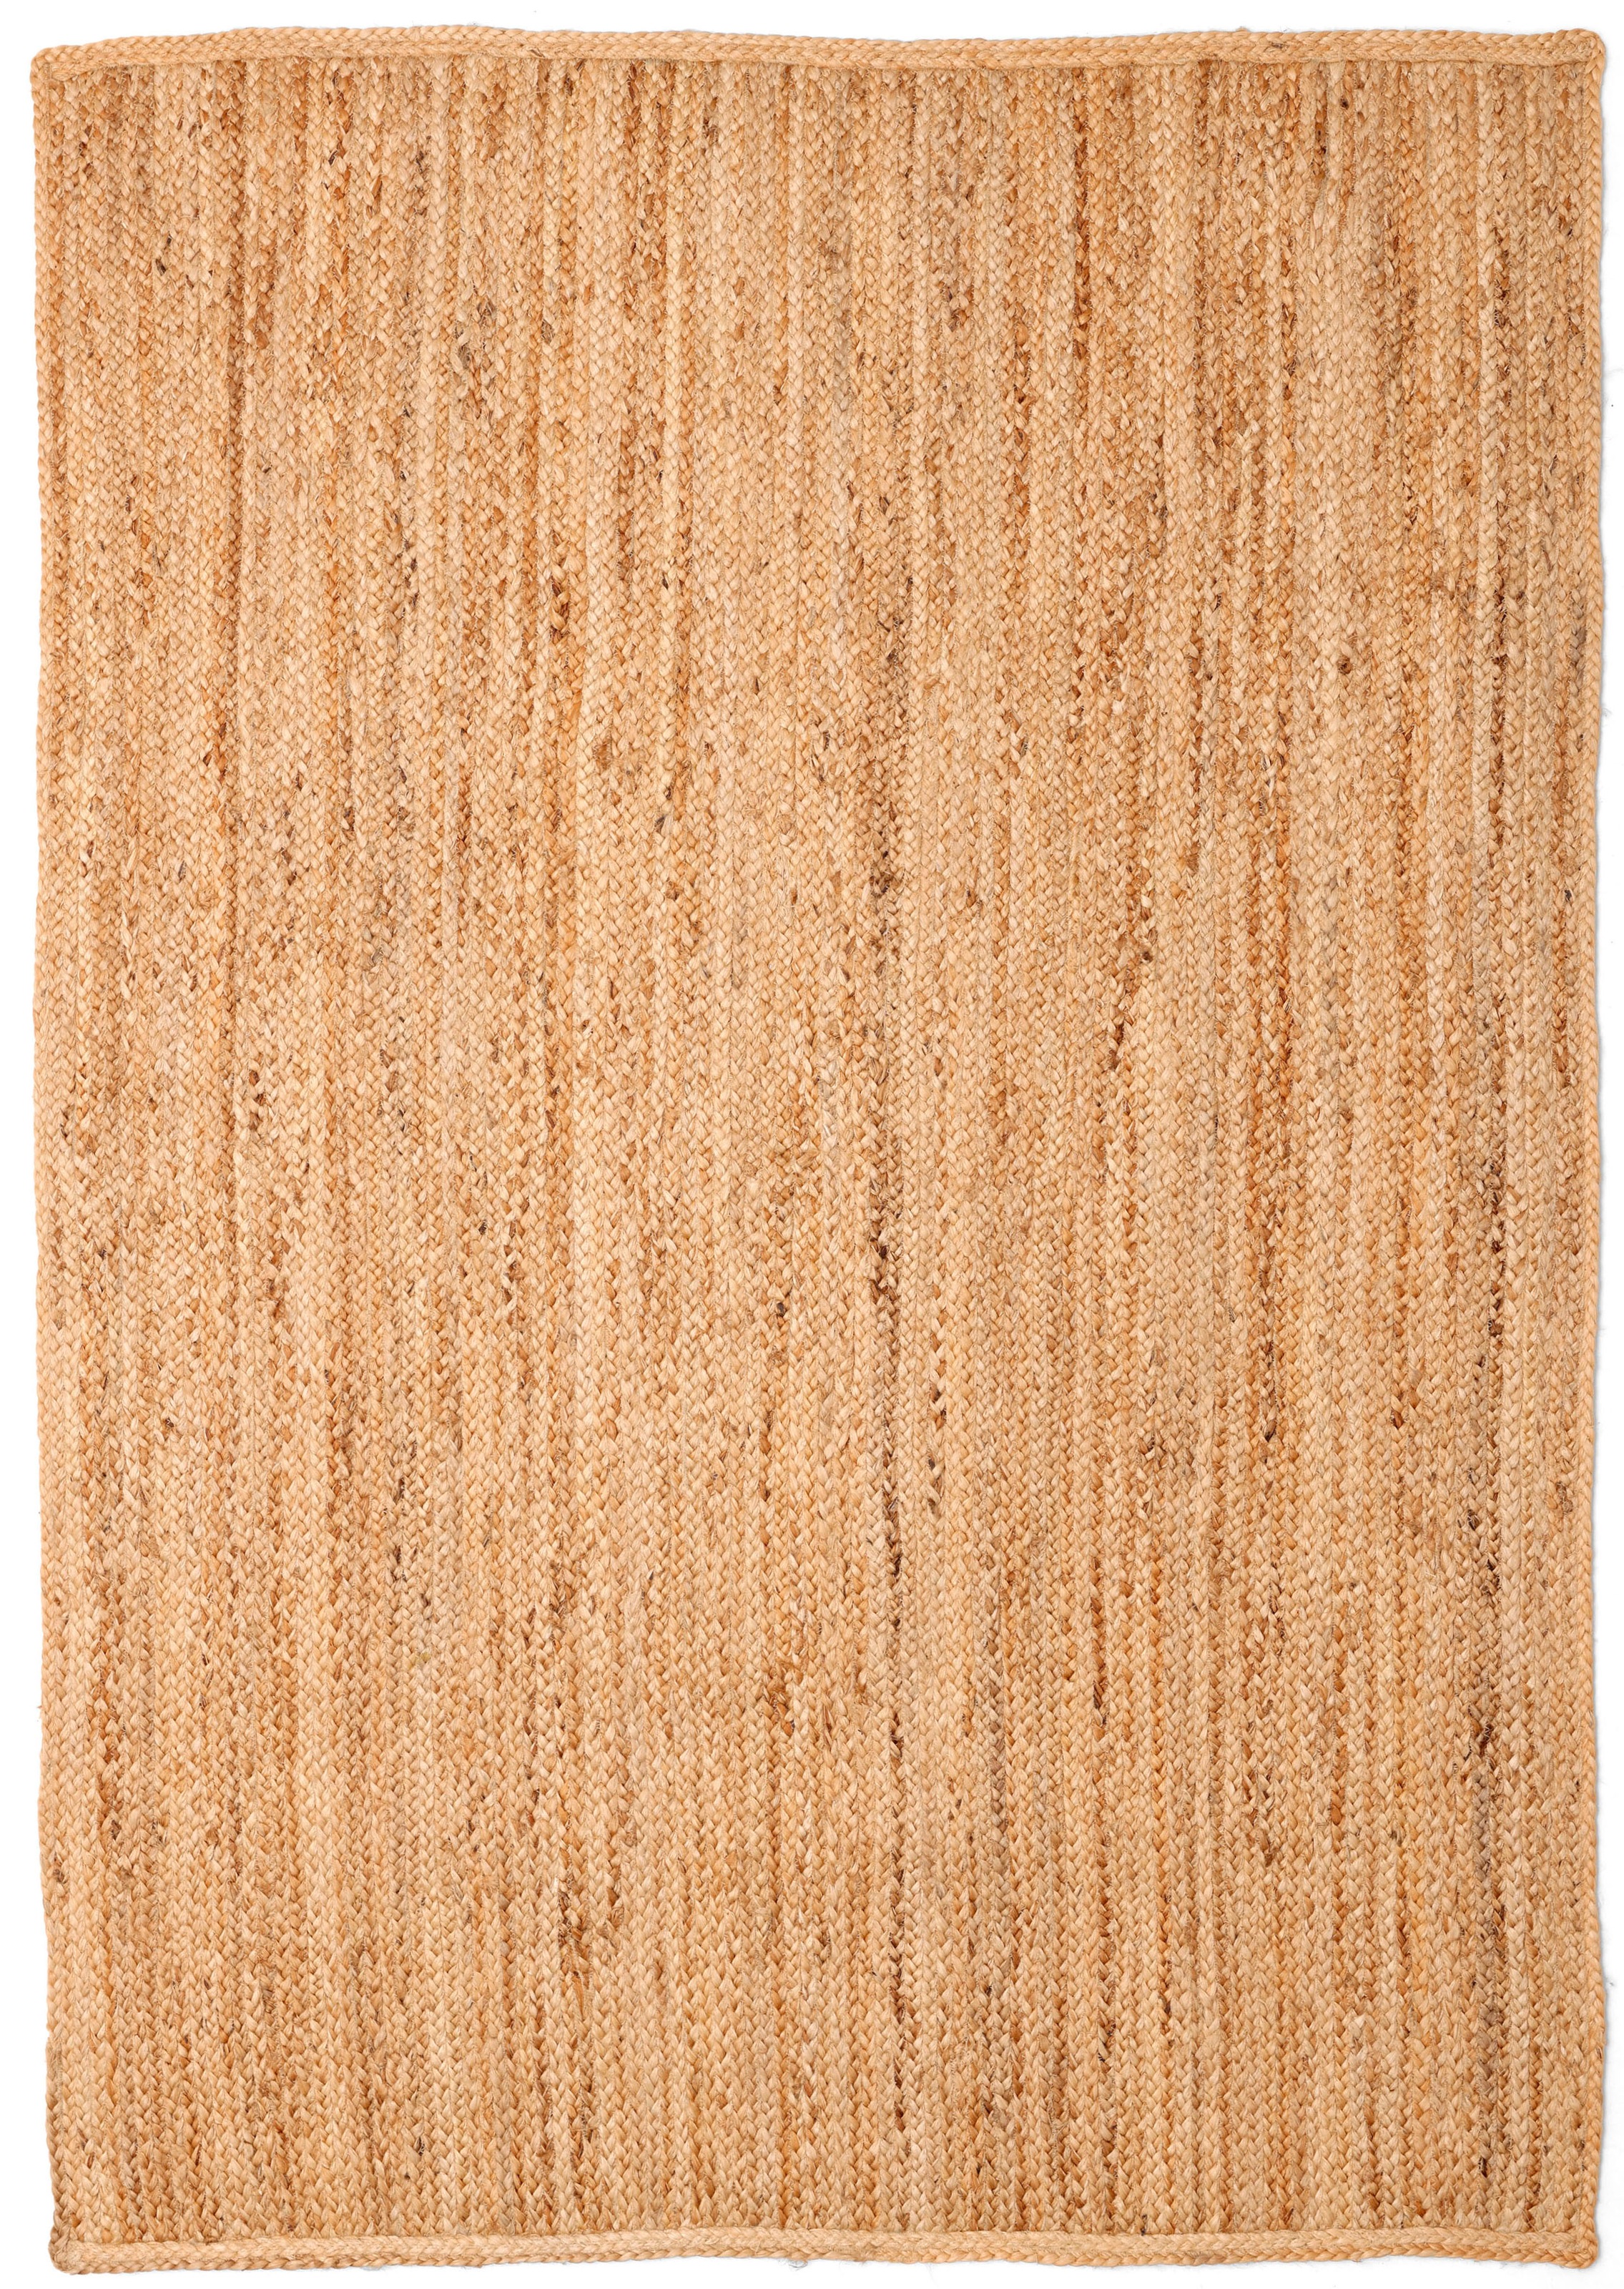 andas Teppich »Bjarka«, rechteckig, meliert, 100% Jute, handgewebt, auch als Läufer & in rund erhältlich